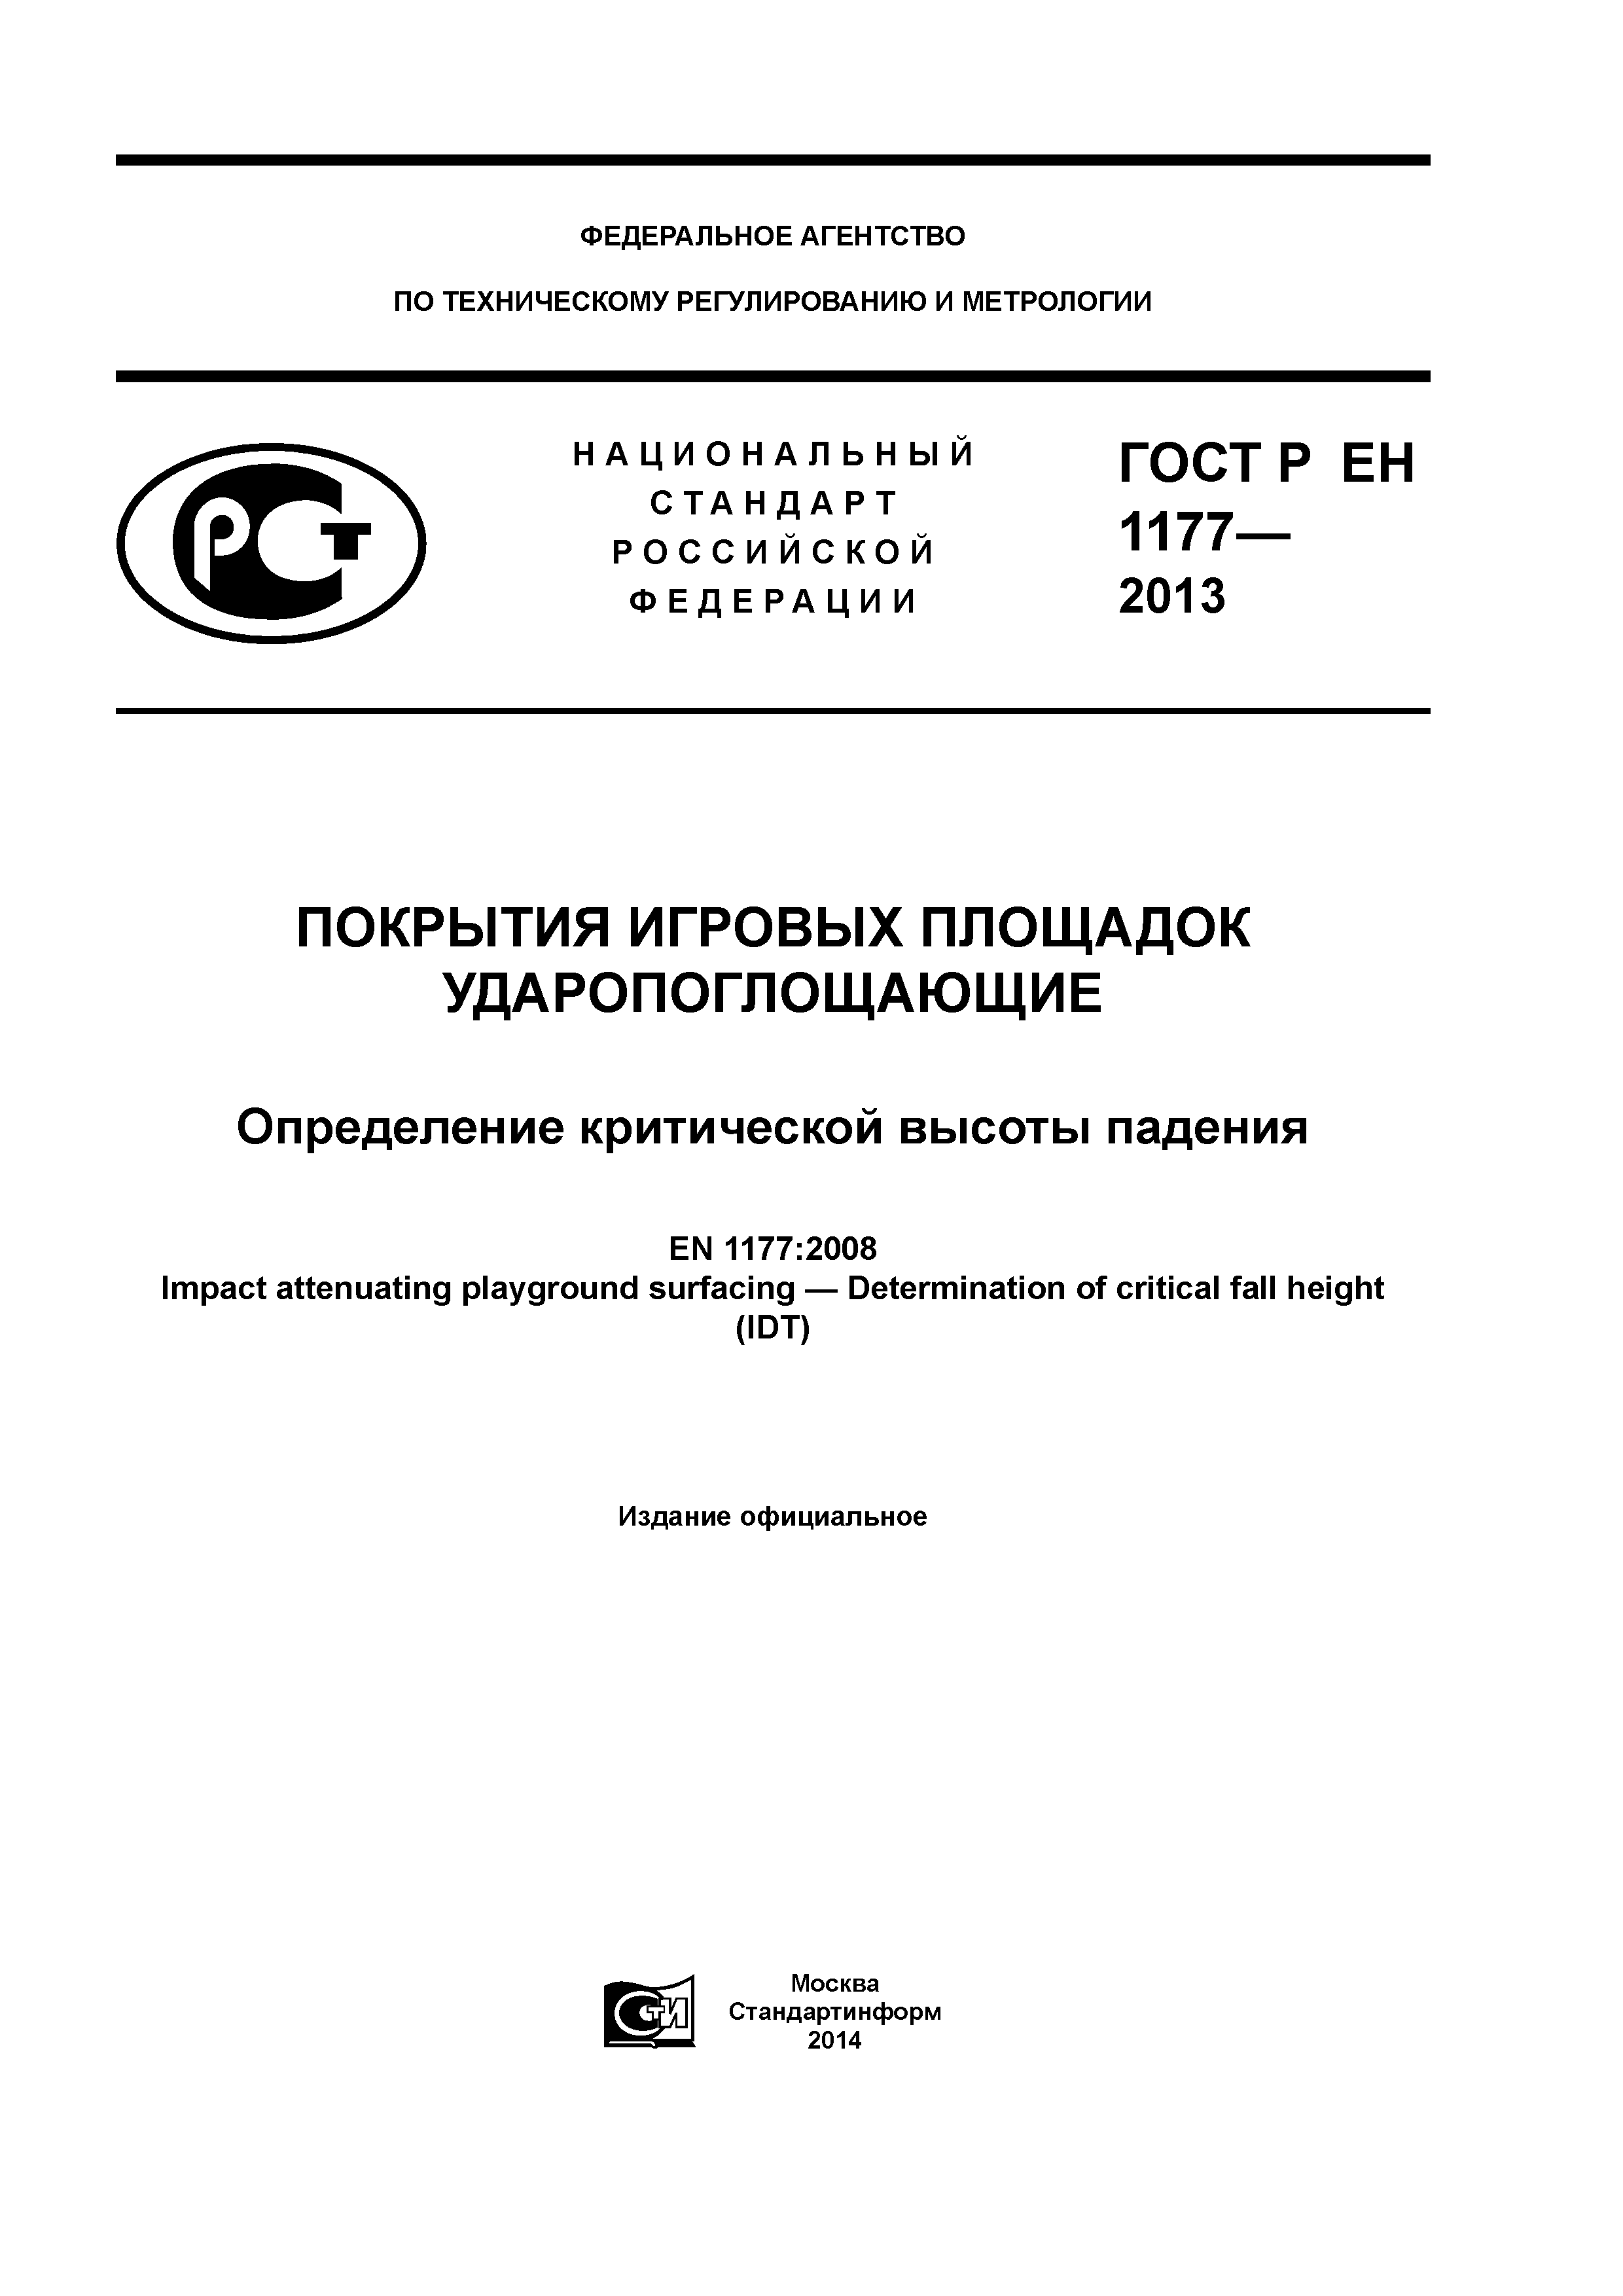 ГОСТ Р ЕН 1177-2013